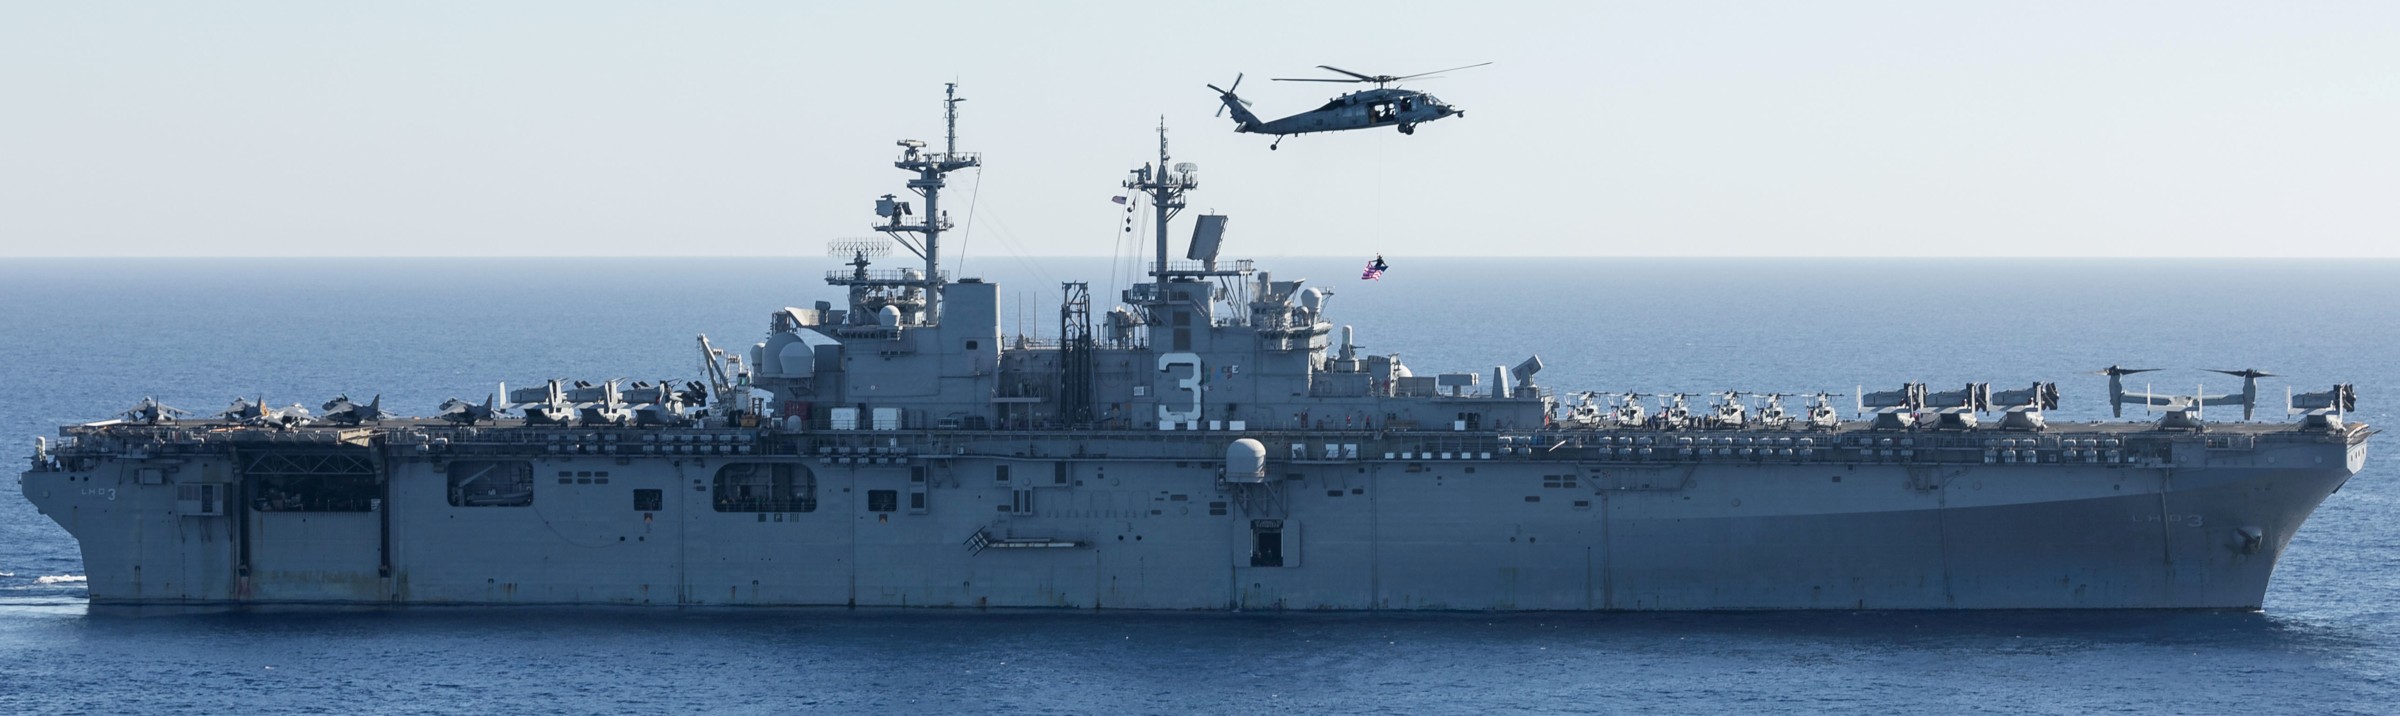 lhd-3 uss kearsarge wasp class amphibious assault ship us navy marines vmm-263 rein 246